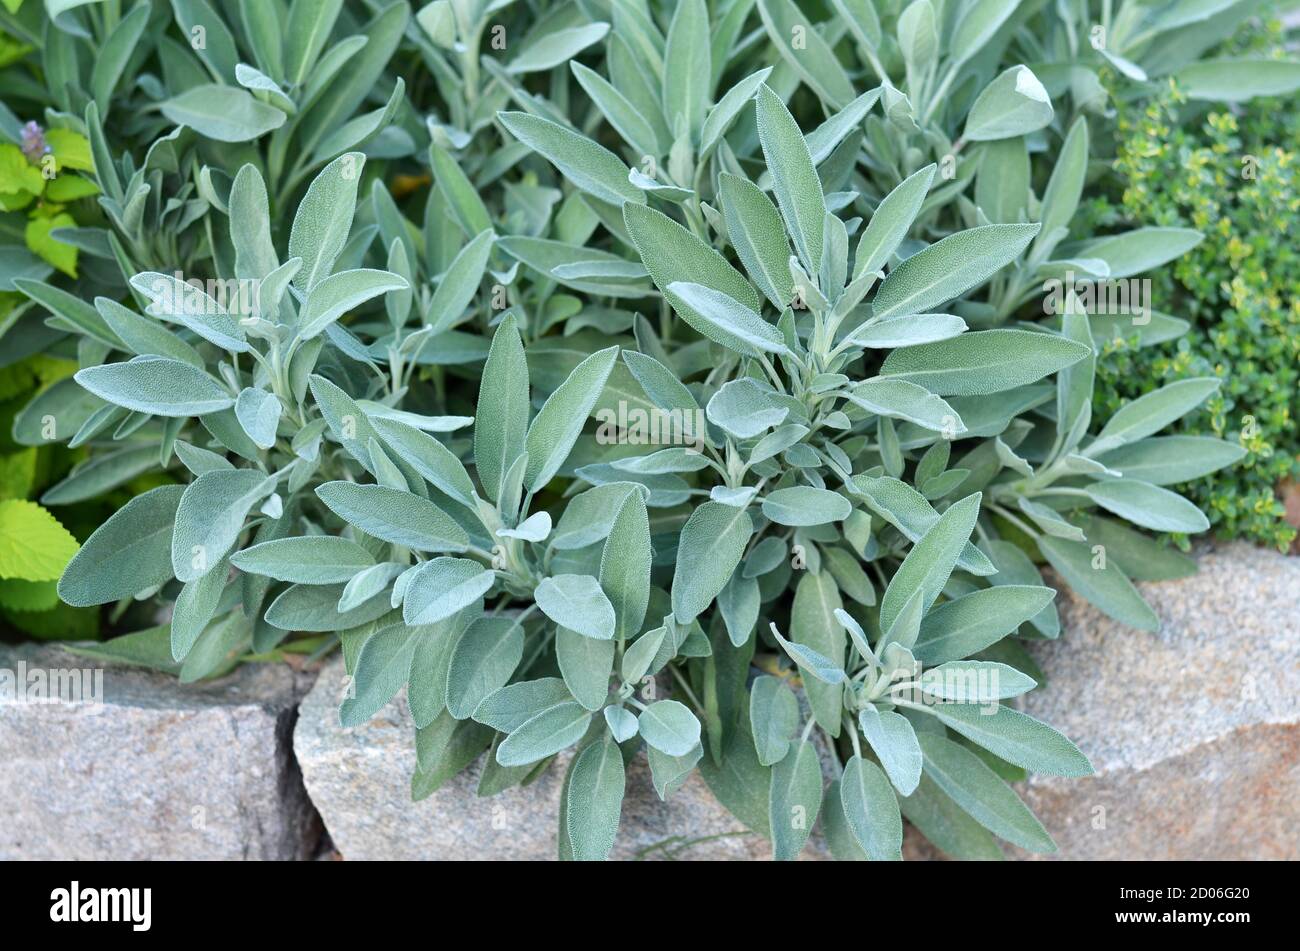 Salvia officinalis o salvia común - arbusto perenne, utilizado en medicina y culinaria. Bush de salvia aromática creciendo al aire libre en el jardín. Foto de stock